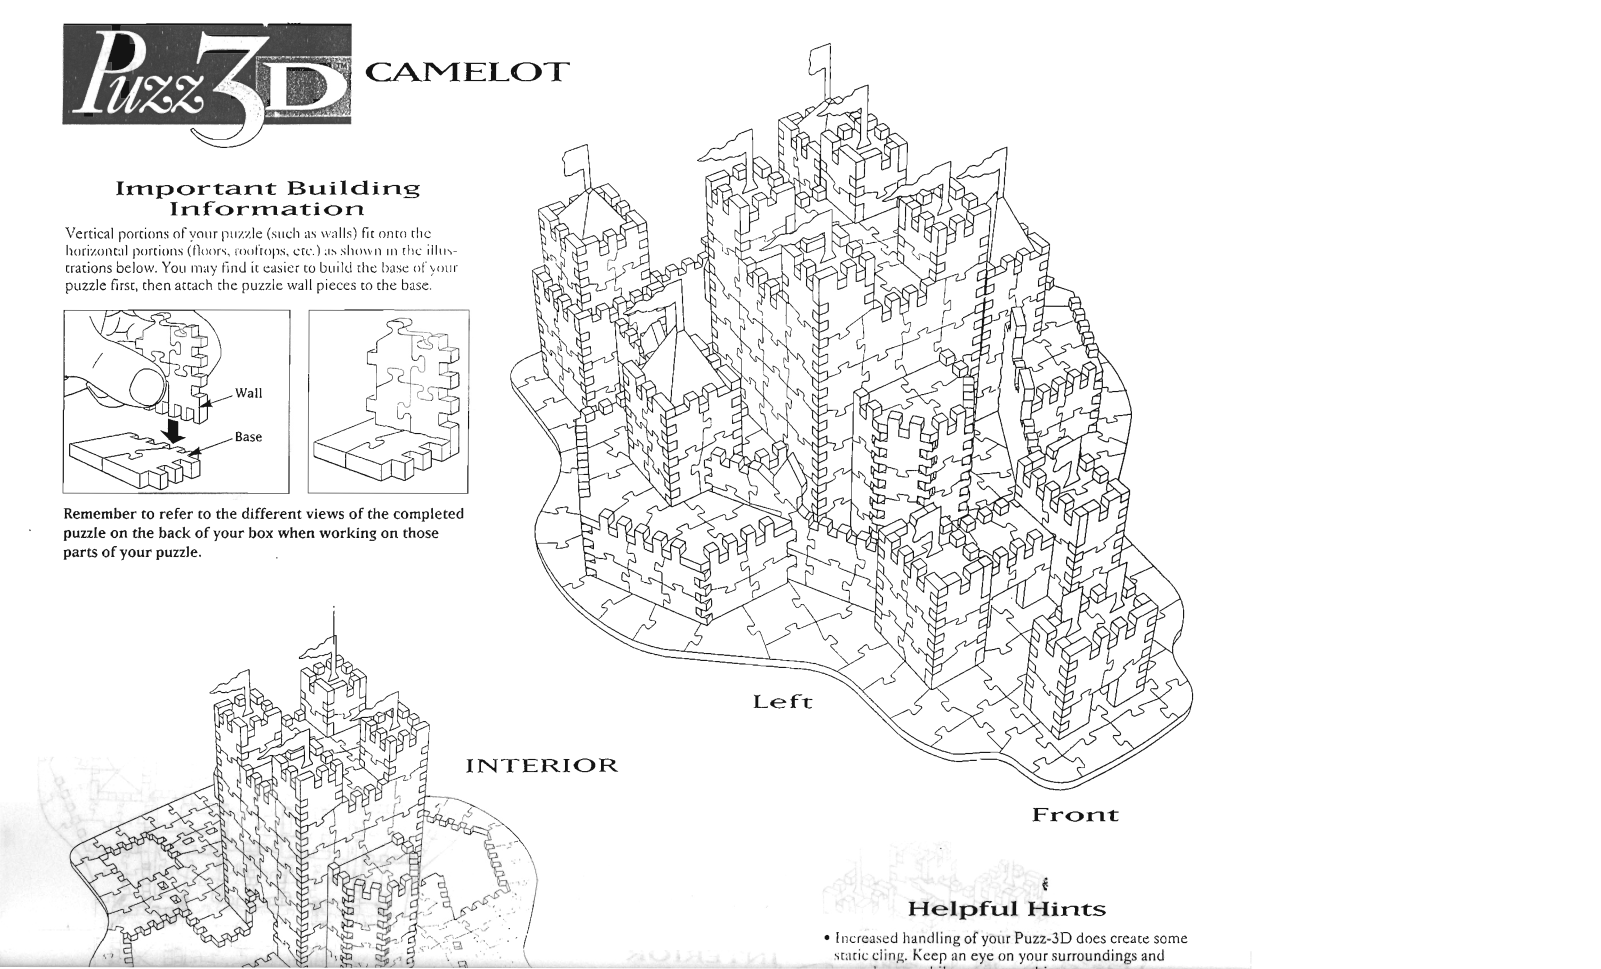 Hasbro PUZZ 3D CAMELOT Manual